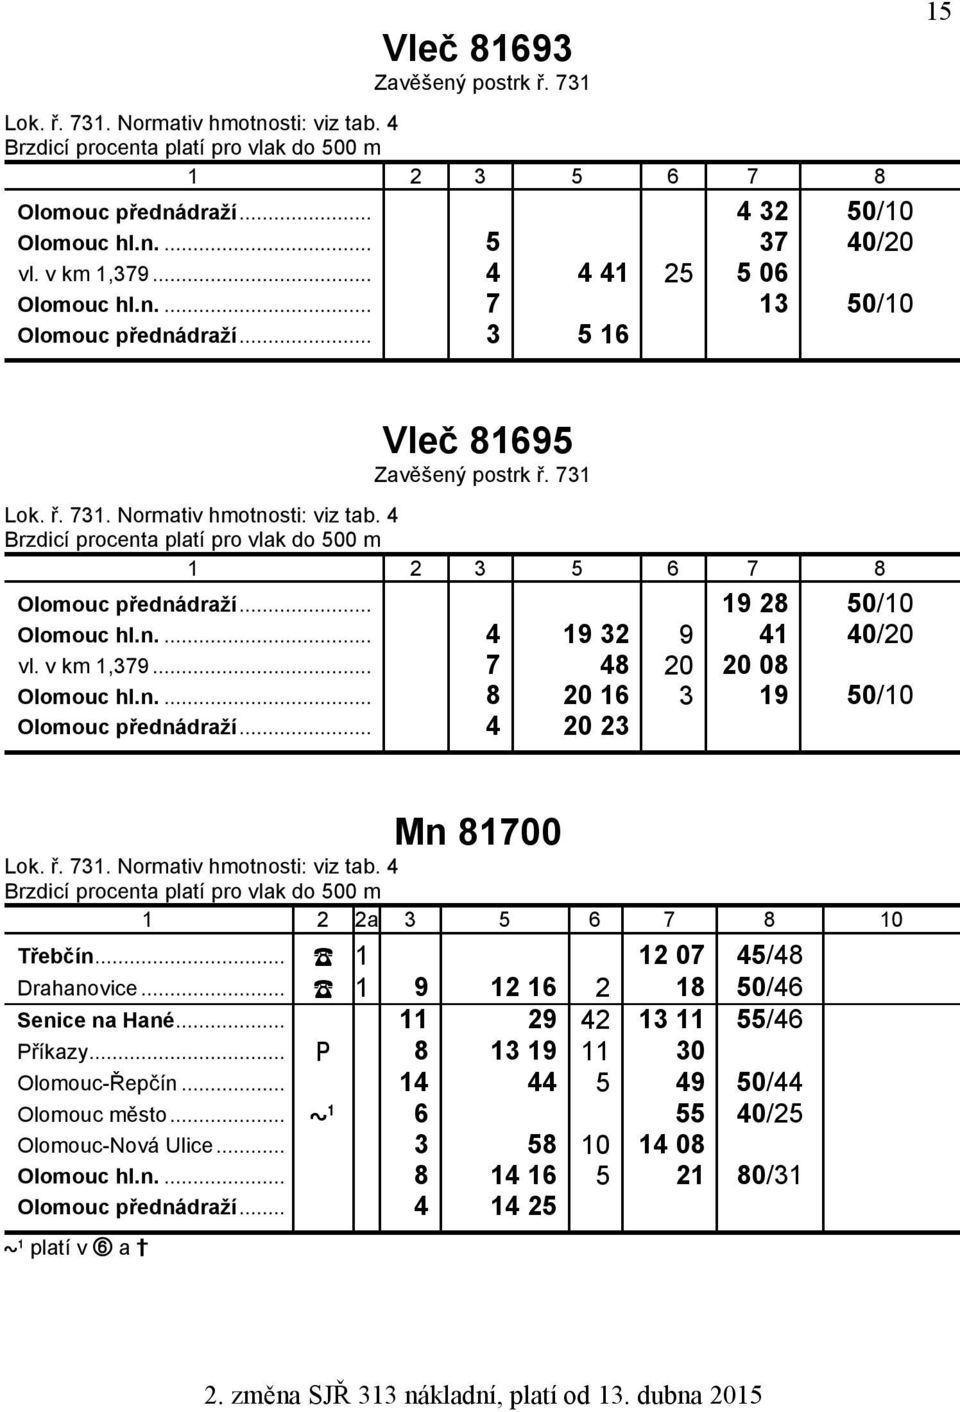 .. 7 48 20 20 08 Olomouc hl.n.... 8 20 16 3 19 50/10 Olomouc přednádraží... 4 20 23 Mn 81700 Brzdicí procenta platí pro vlak do 500 m Třebčín... 1 12 07 45/48 Drahanovice.